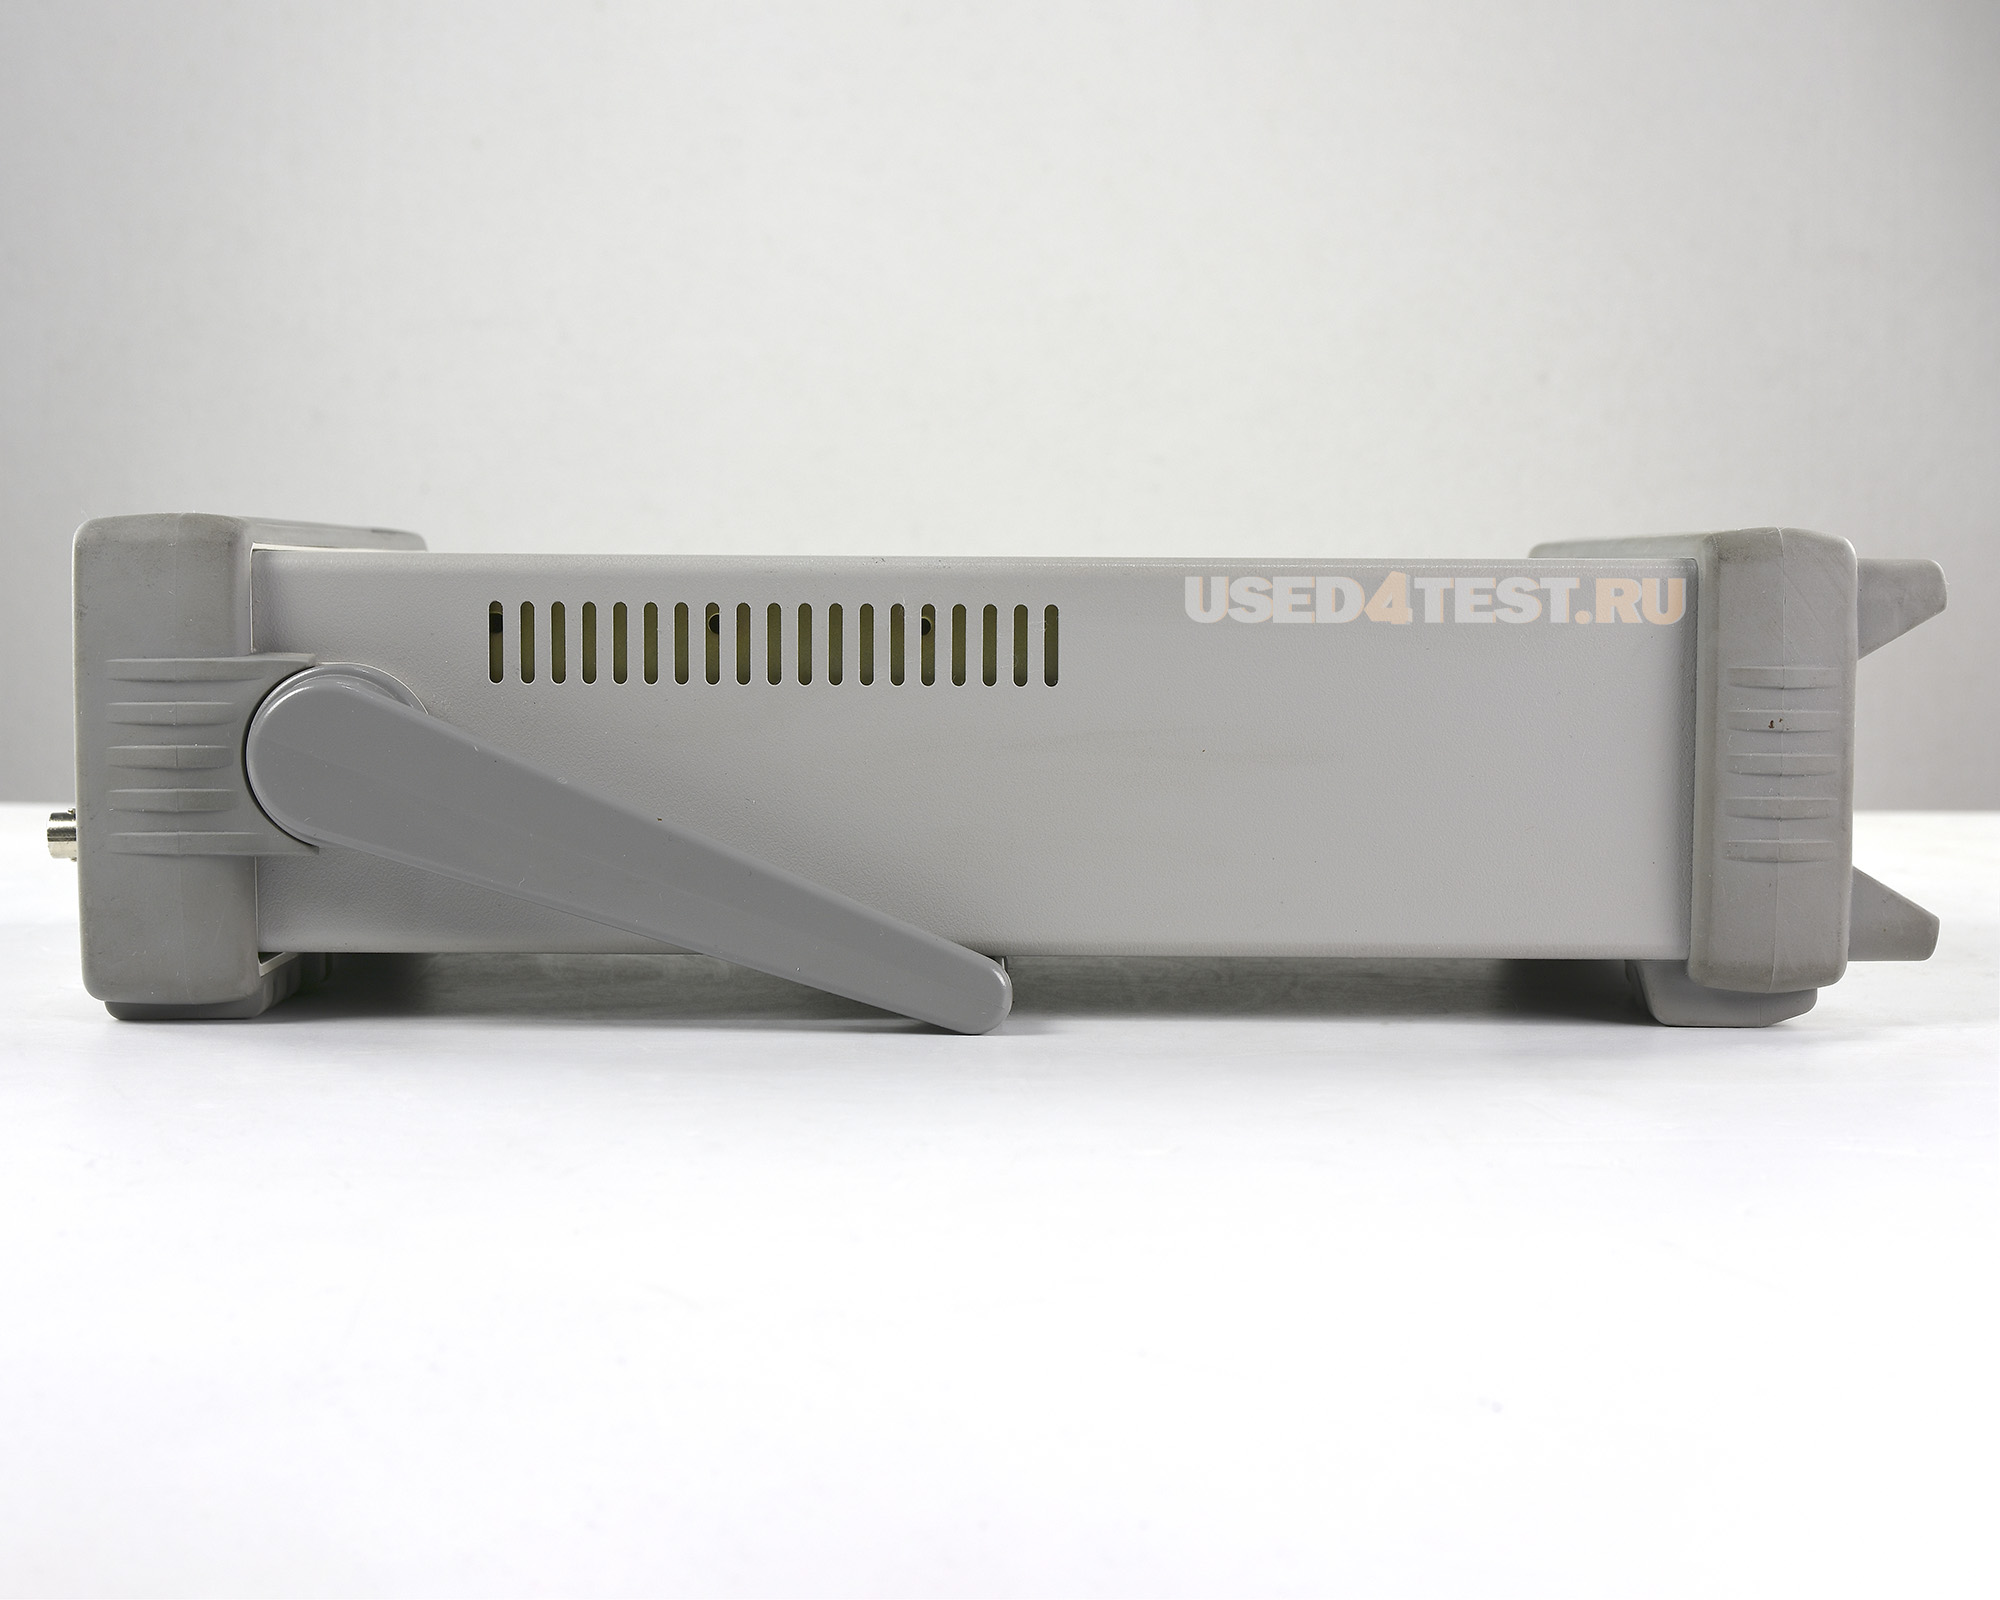 Универсальный частотомер/таймер HP 53181A
 
